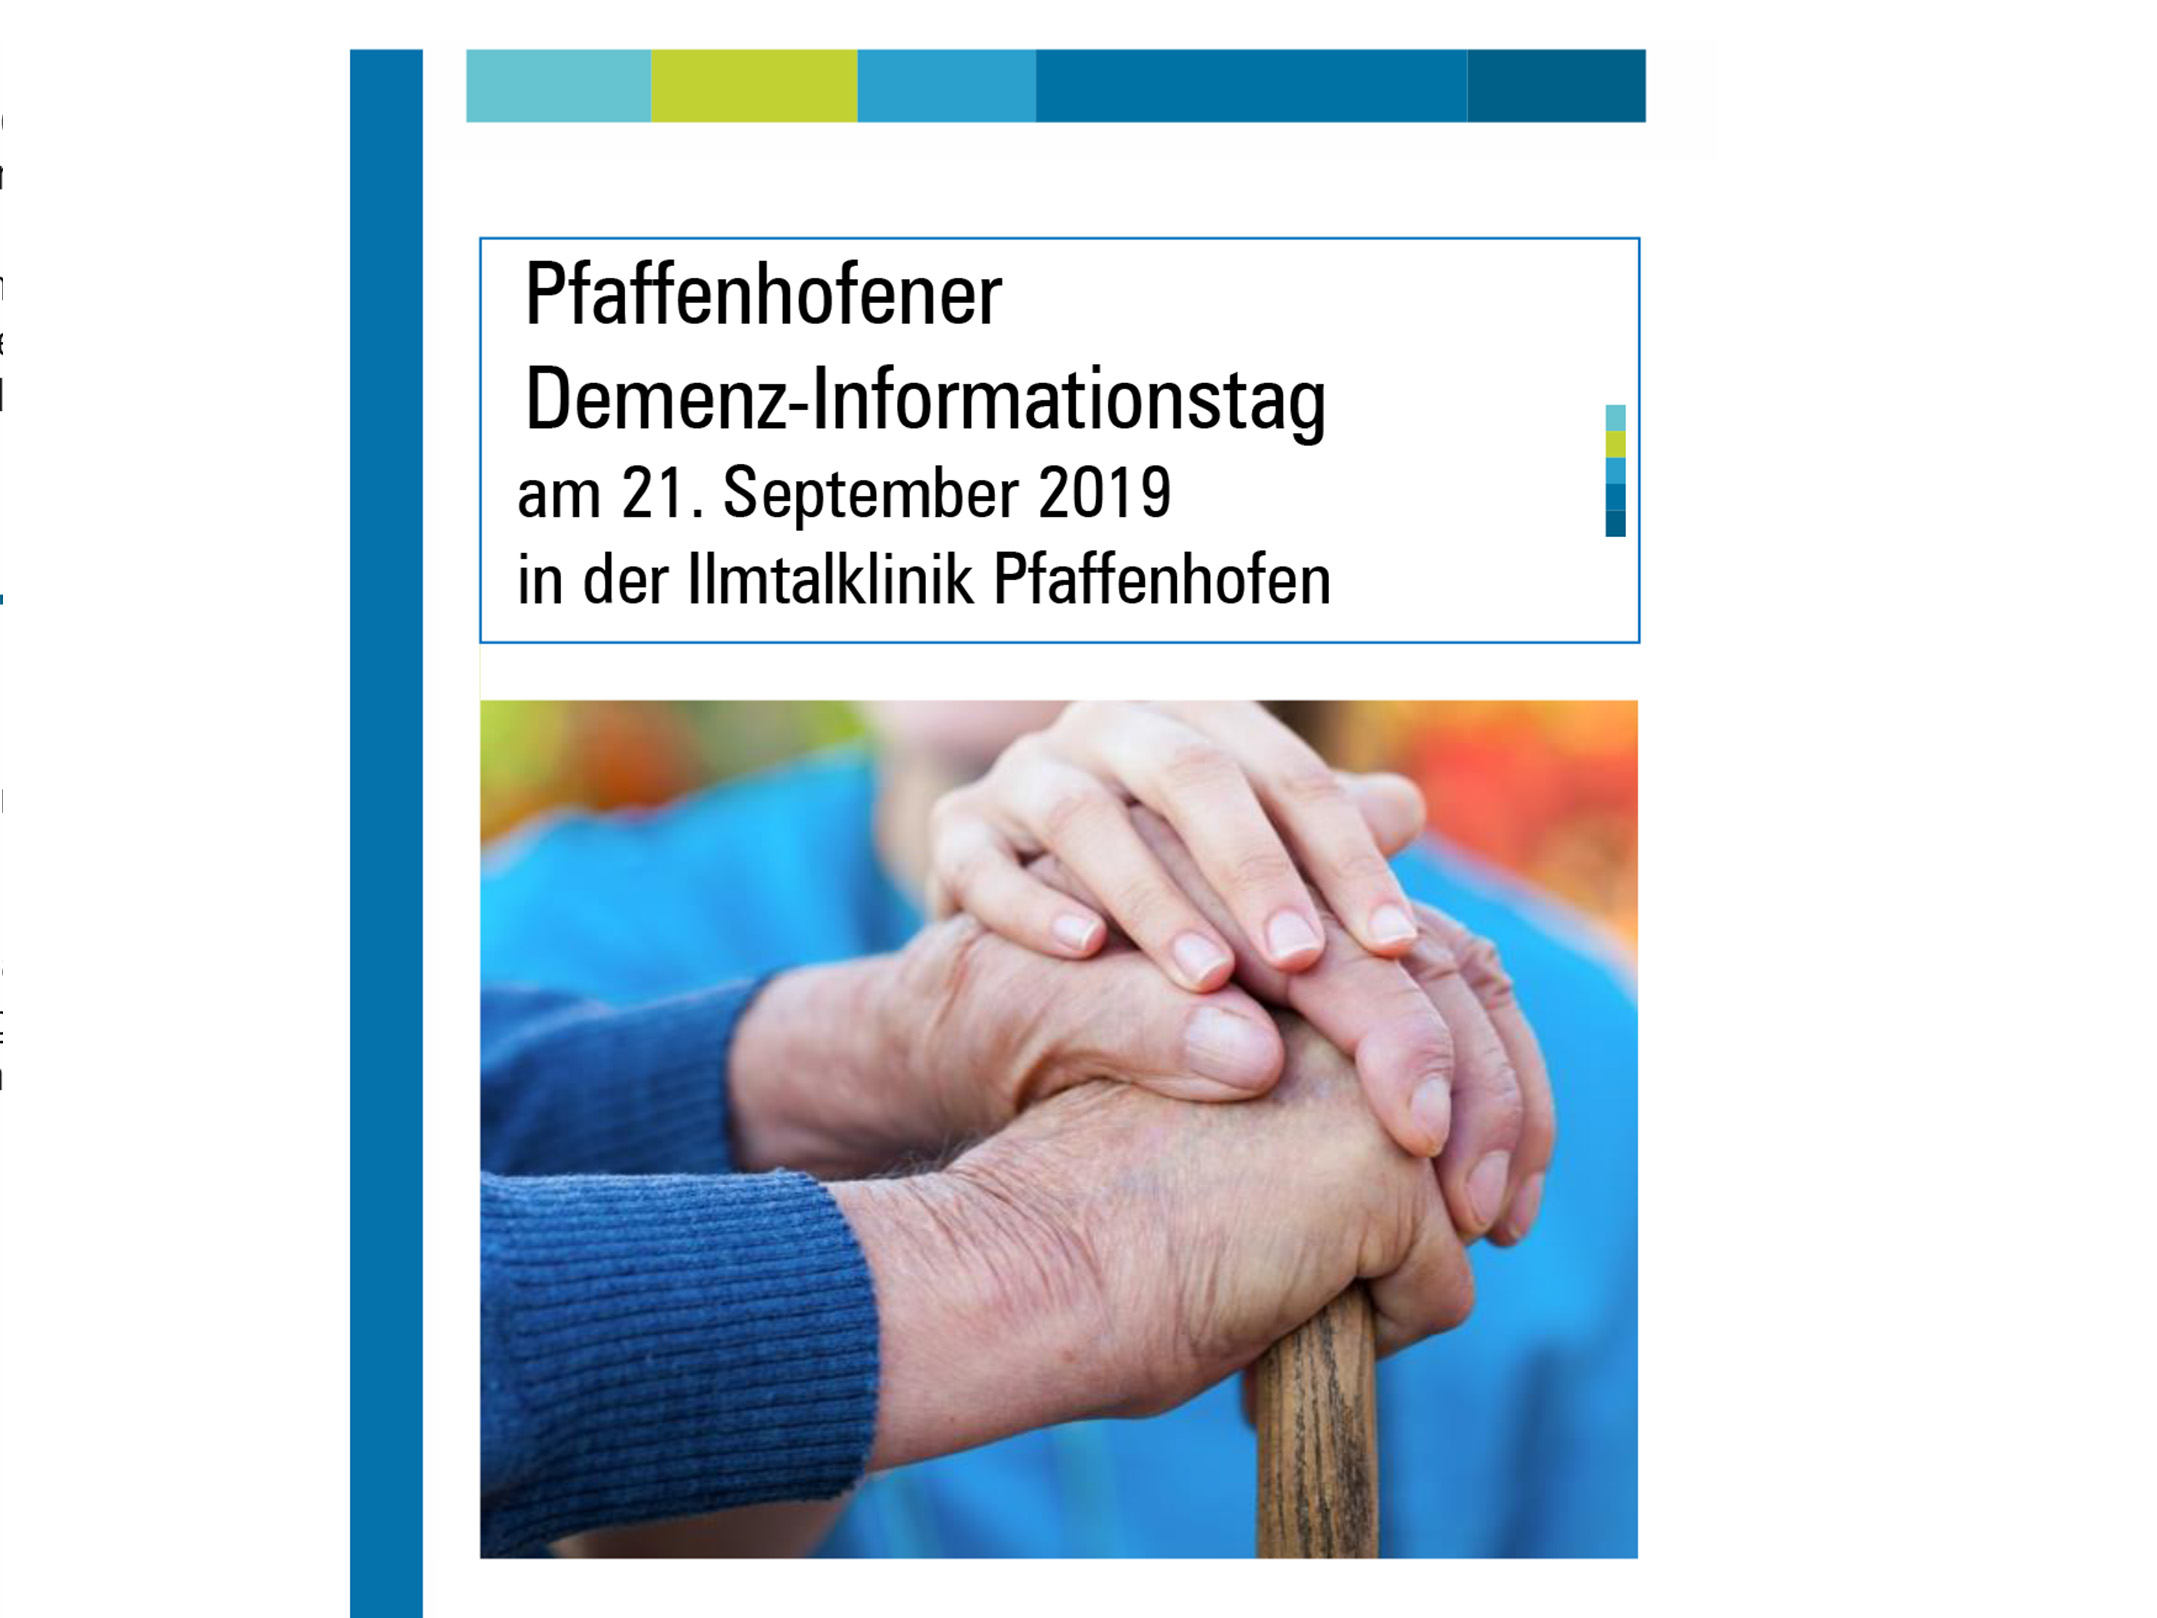 Pfaffenhofener Demenz Informationstag, 21.09.19, 11:00 Uhr bis 15:00 Uhr